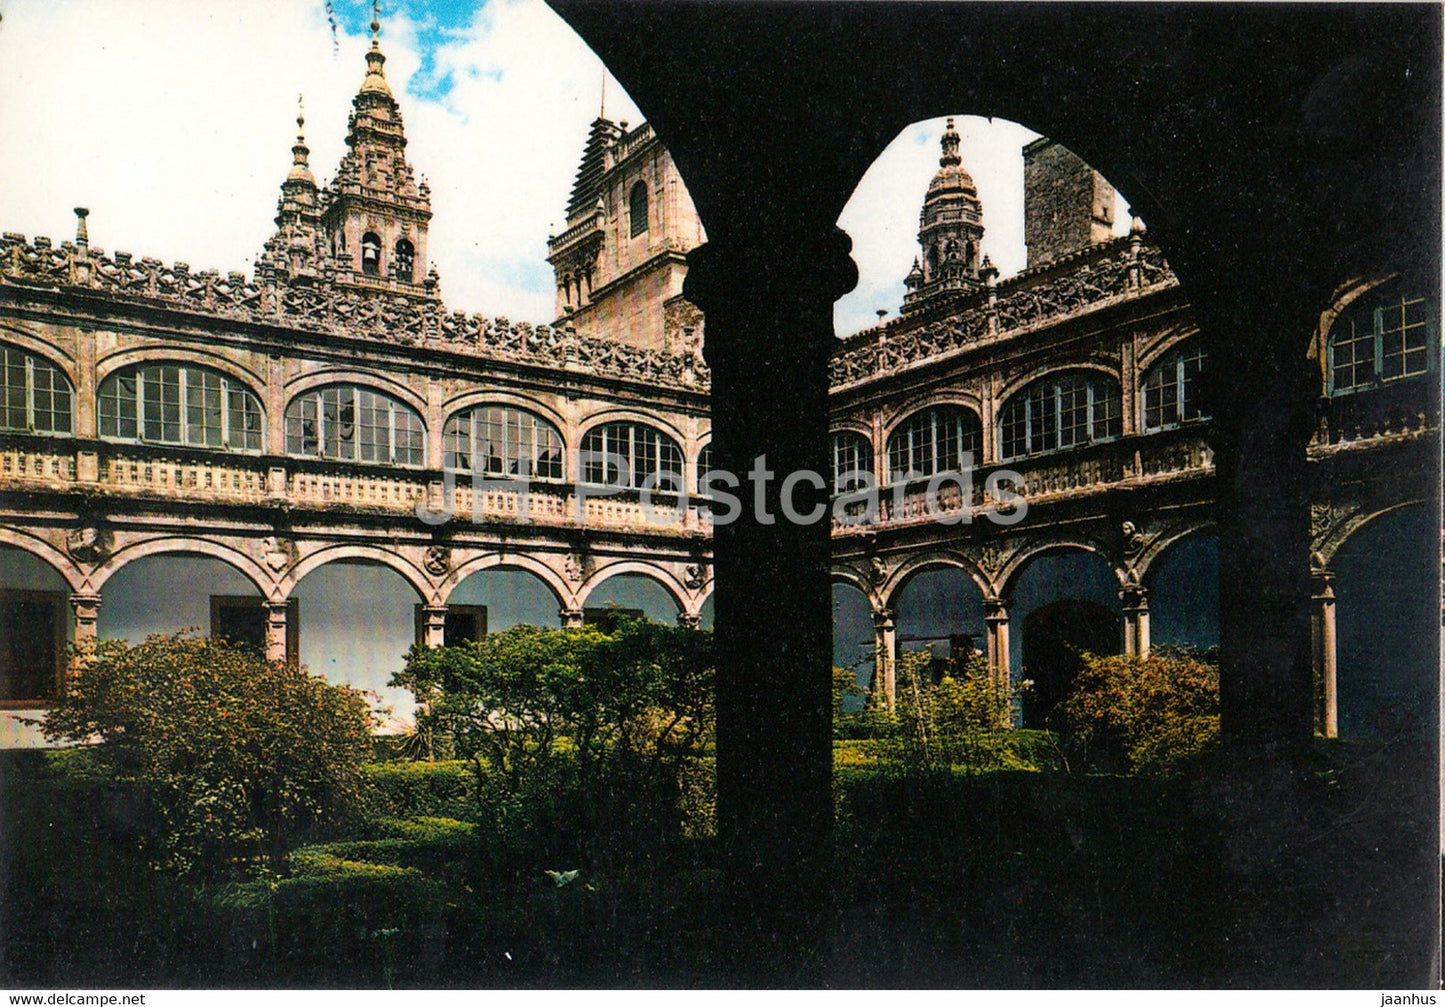 Santiago de Compostela - Colegio de Fonseca - Claustro - 3216 - Spain - unused - JH Postcards